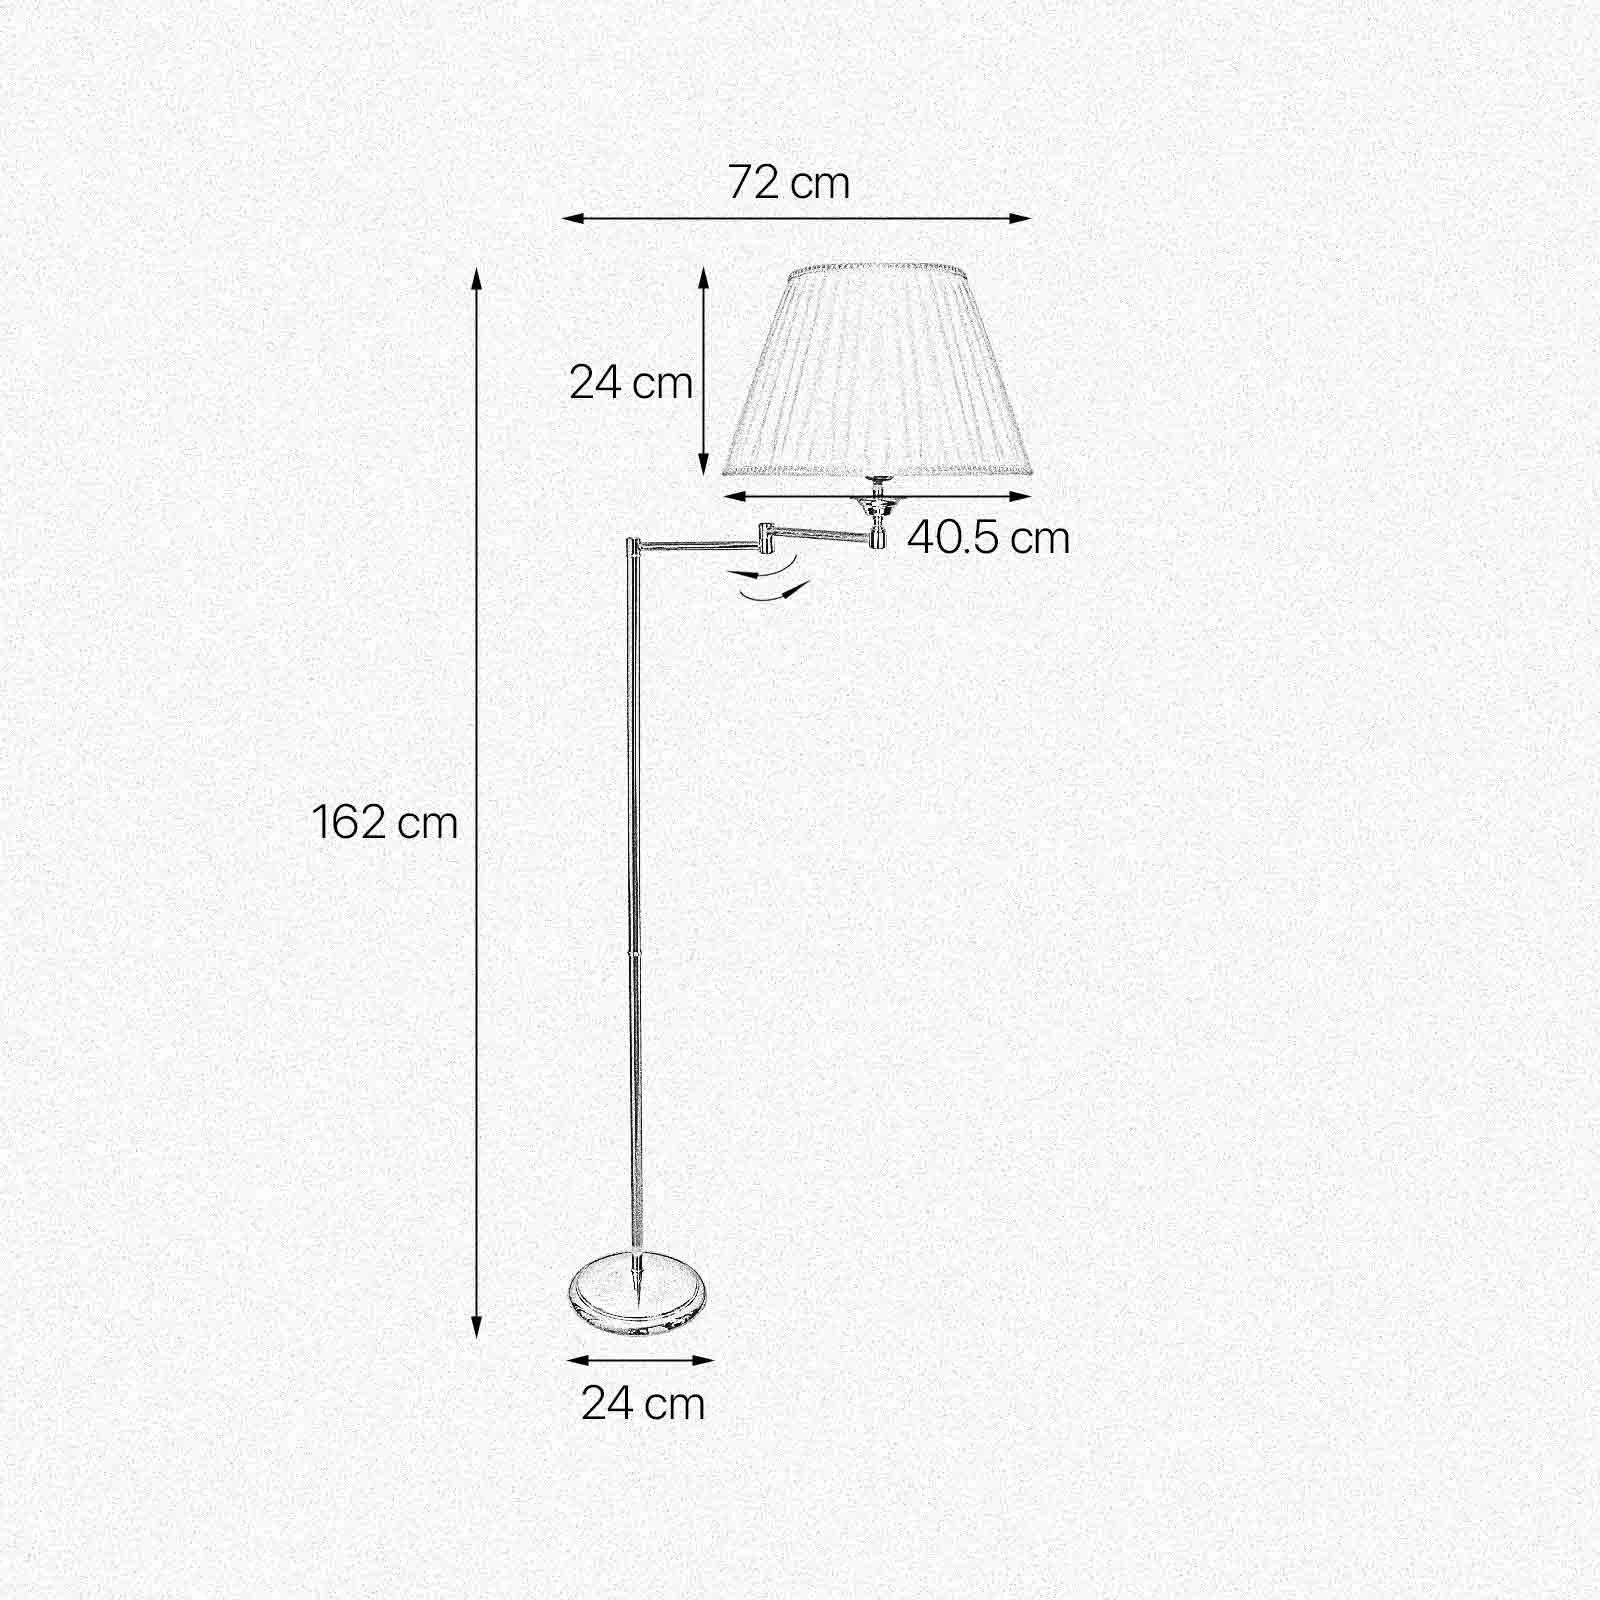 Stehlampe Gelenkarm 162 cm Messing Stoff E27 Wohnzimmer